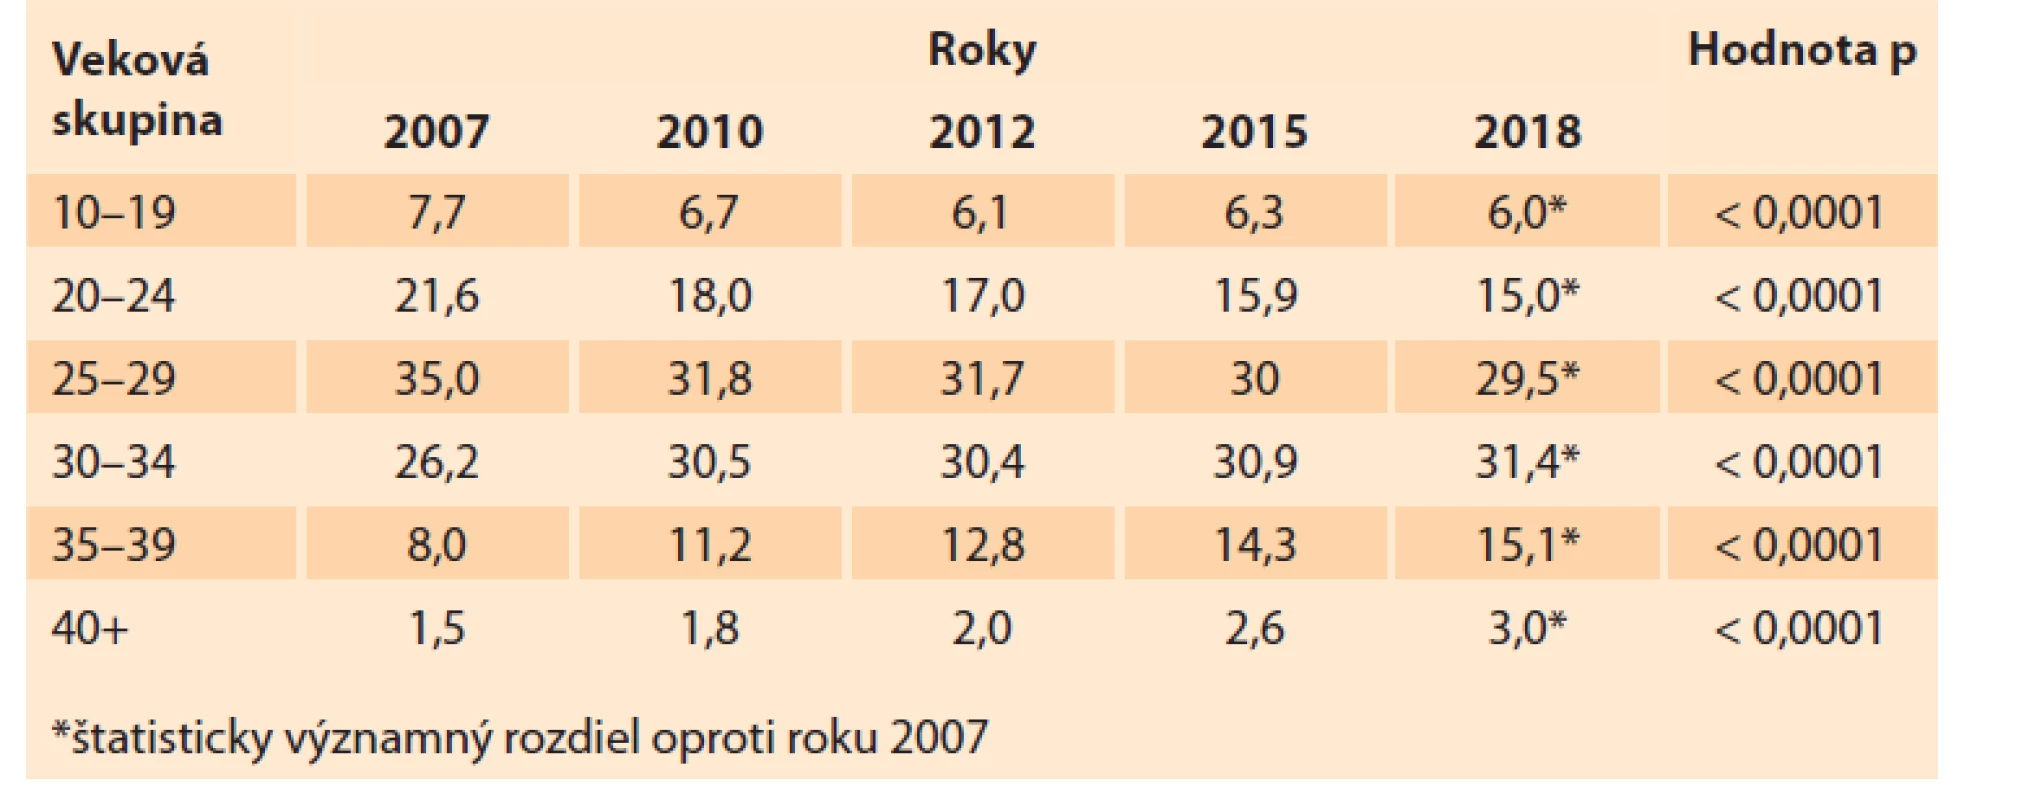 Podiel rodičiek na celkovej pôrodnosti v Slovenskej republike v rokoch
2007–2018 (%).<br>
Tab. 8. Share of mothers in total births in the Slovak Republic in 2007–2018 (%).